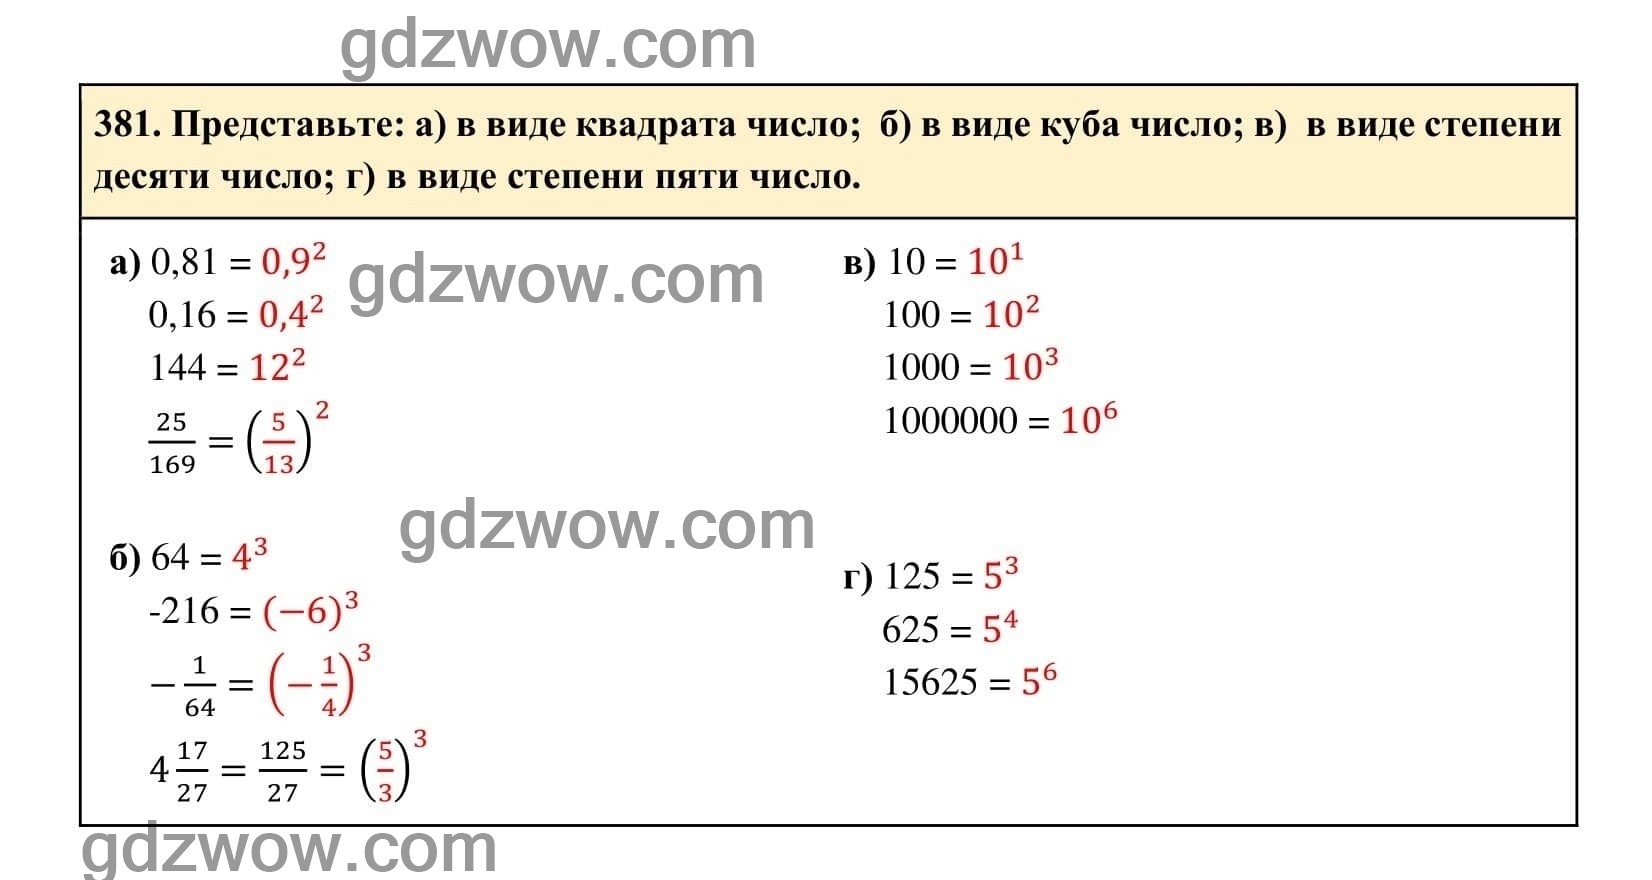 Упражнение 381 - ГДЗ по Алгебре 7 класс Учебник Макарычев (решебник) - GDZwow